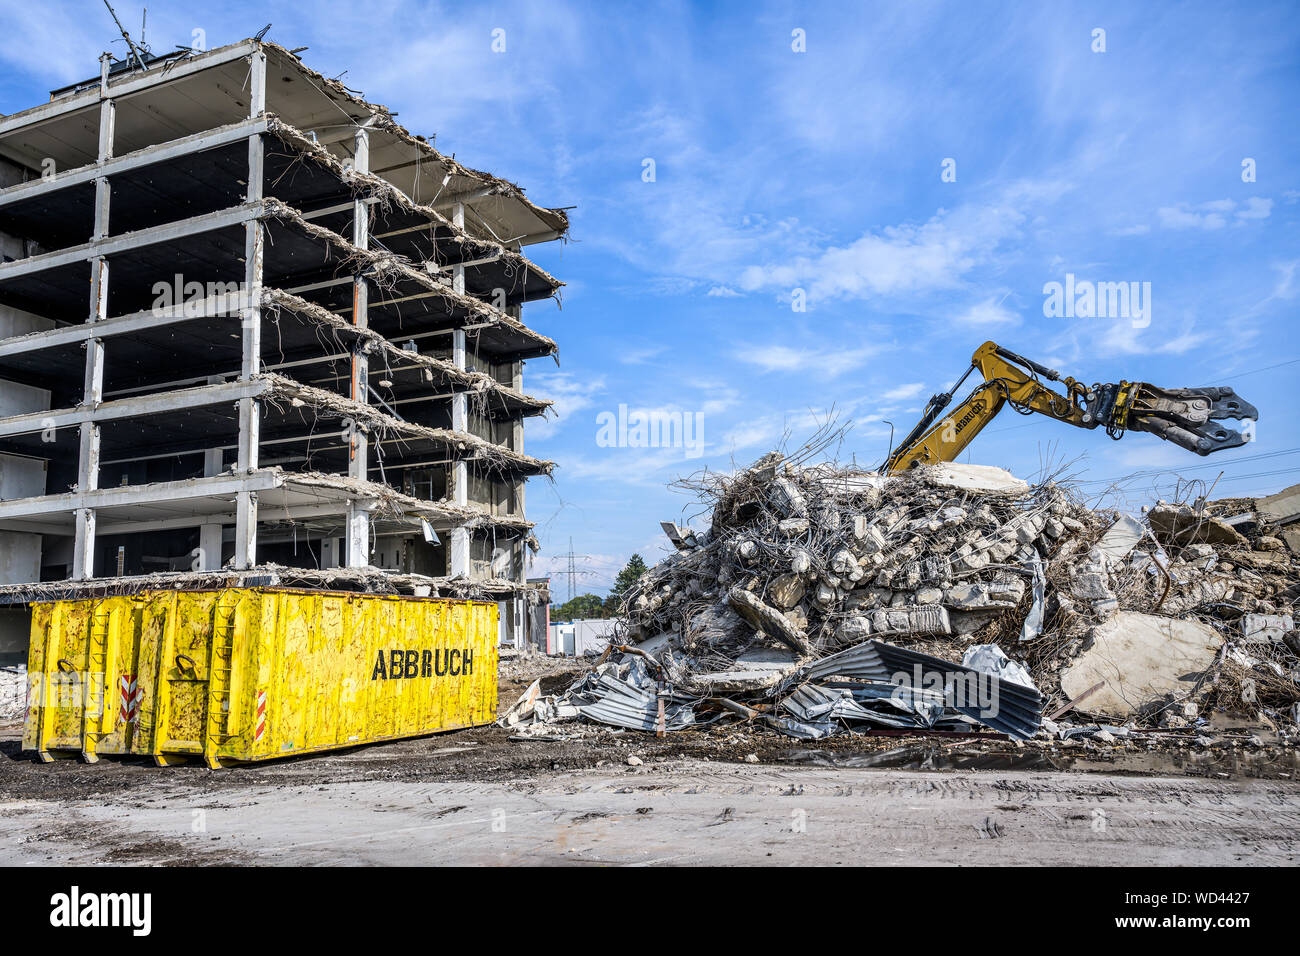 Bâtiment Maison démolition Pelle hydraulique avec site machine crasher et récipient jaune avec écrit abbruch est l'allemand pour la démolition Banque D'Images